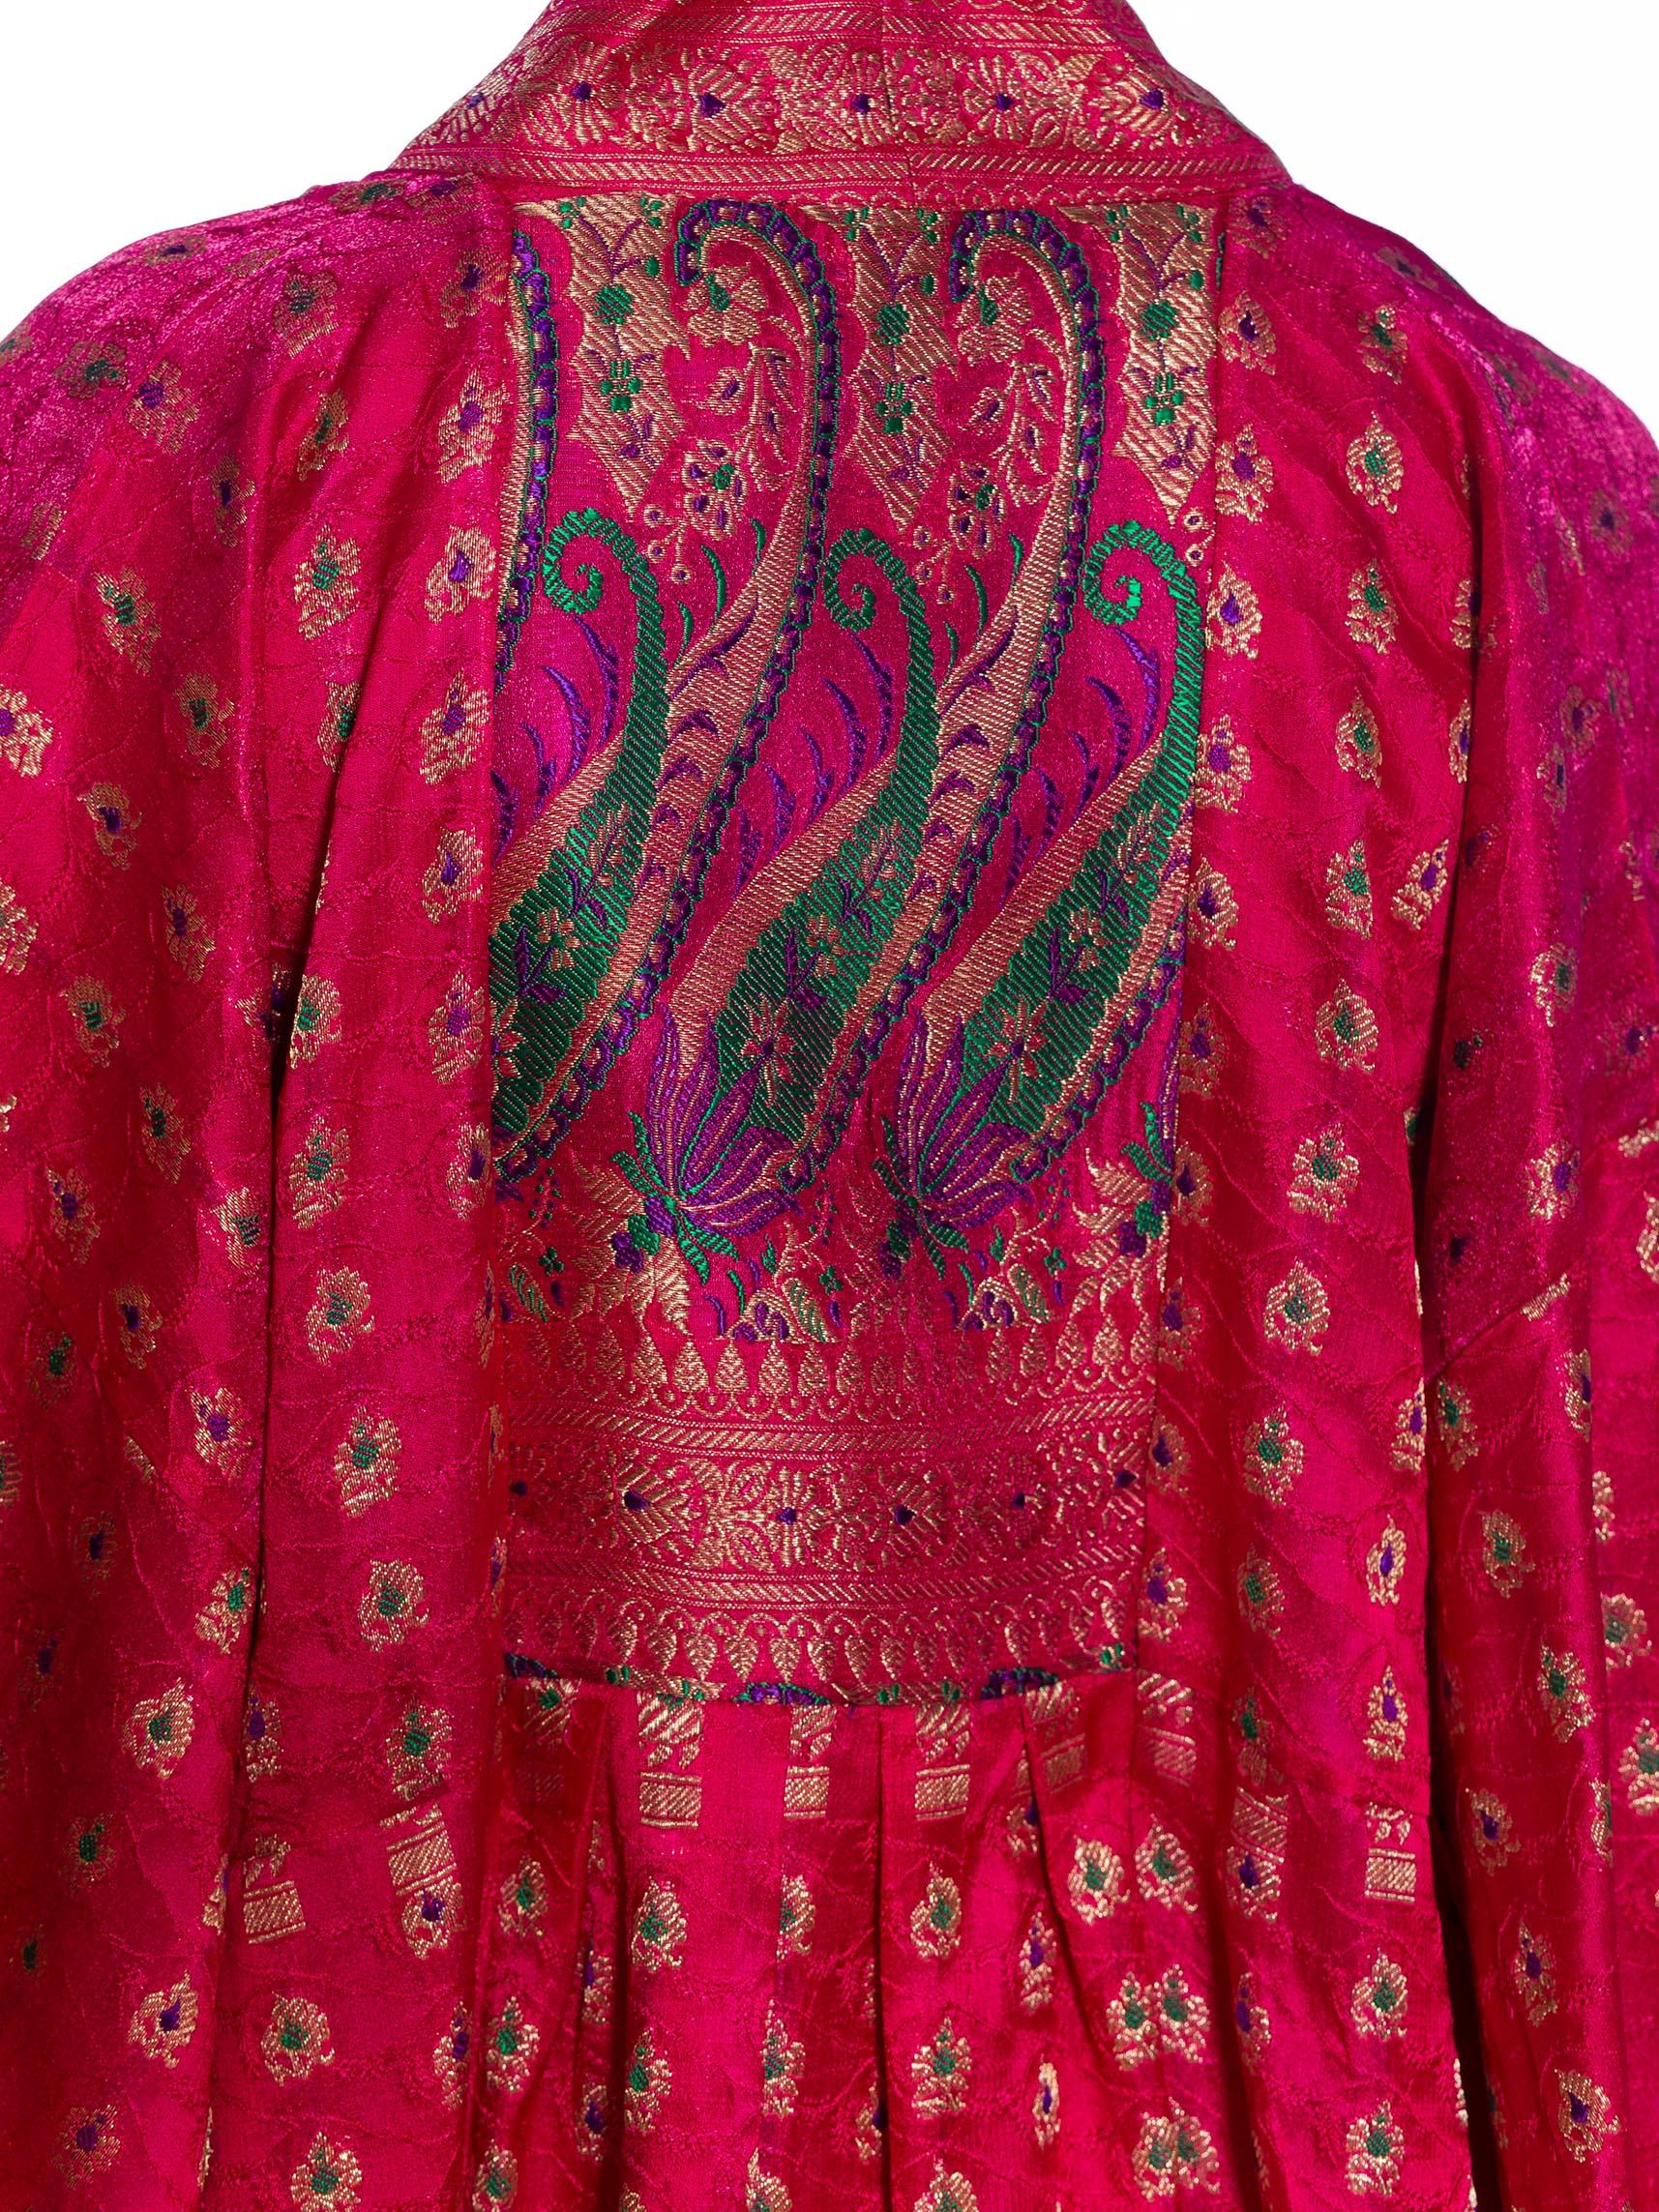 MORPHEW COLLECTION Pink Metallic Silk Kaftan Made From Vintage Saris 4